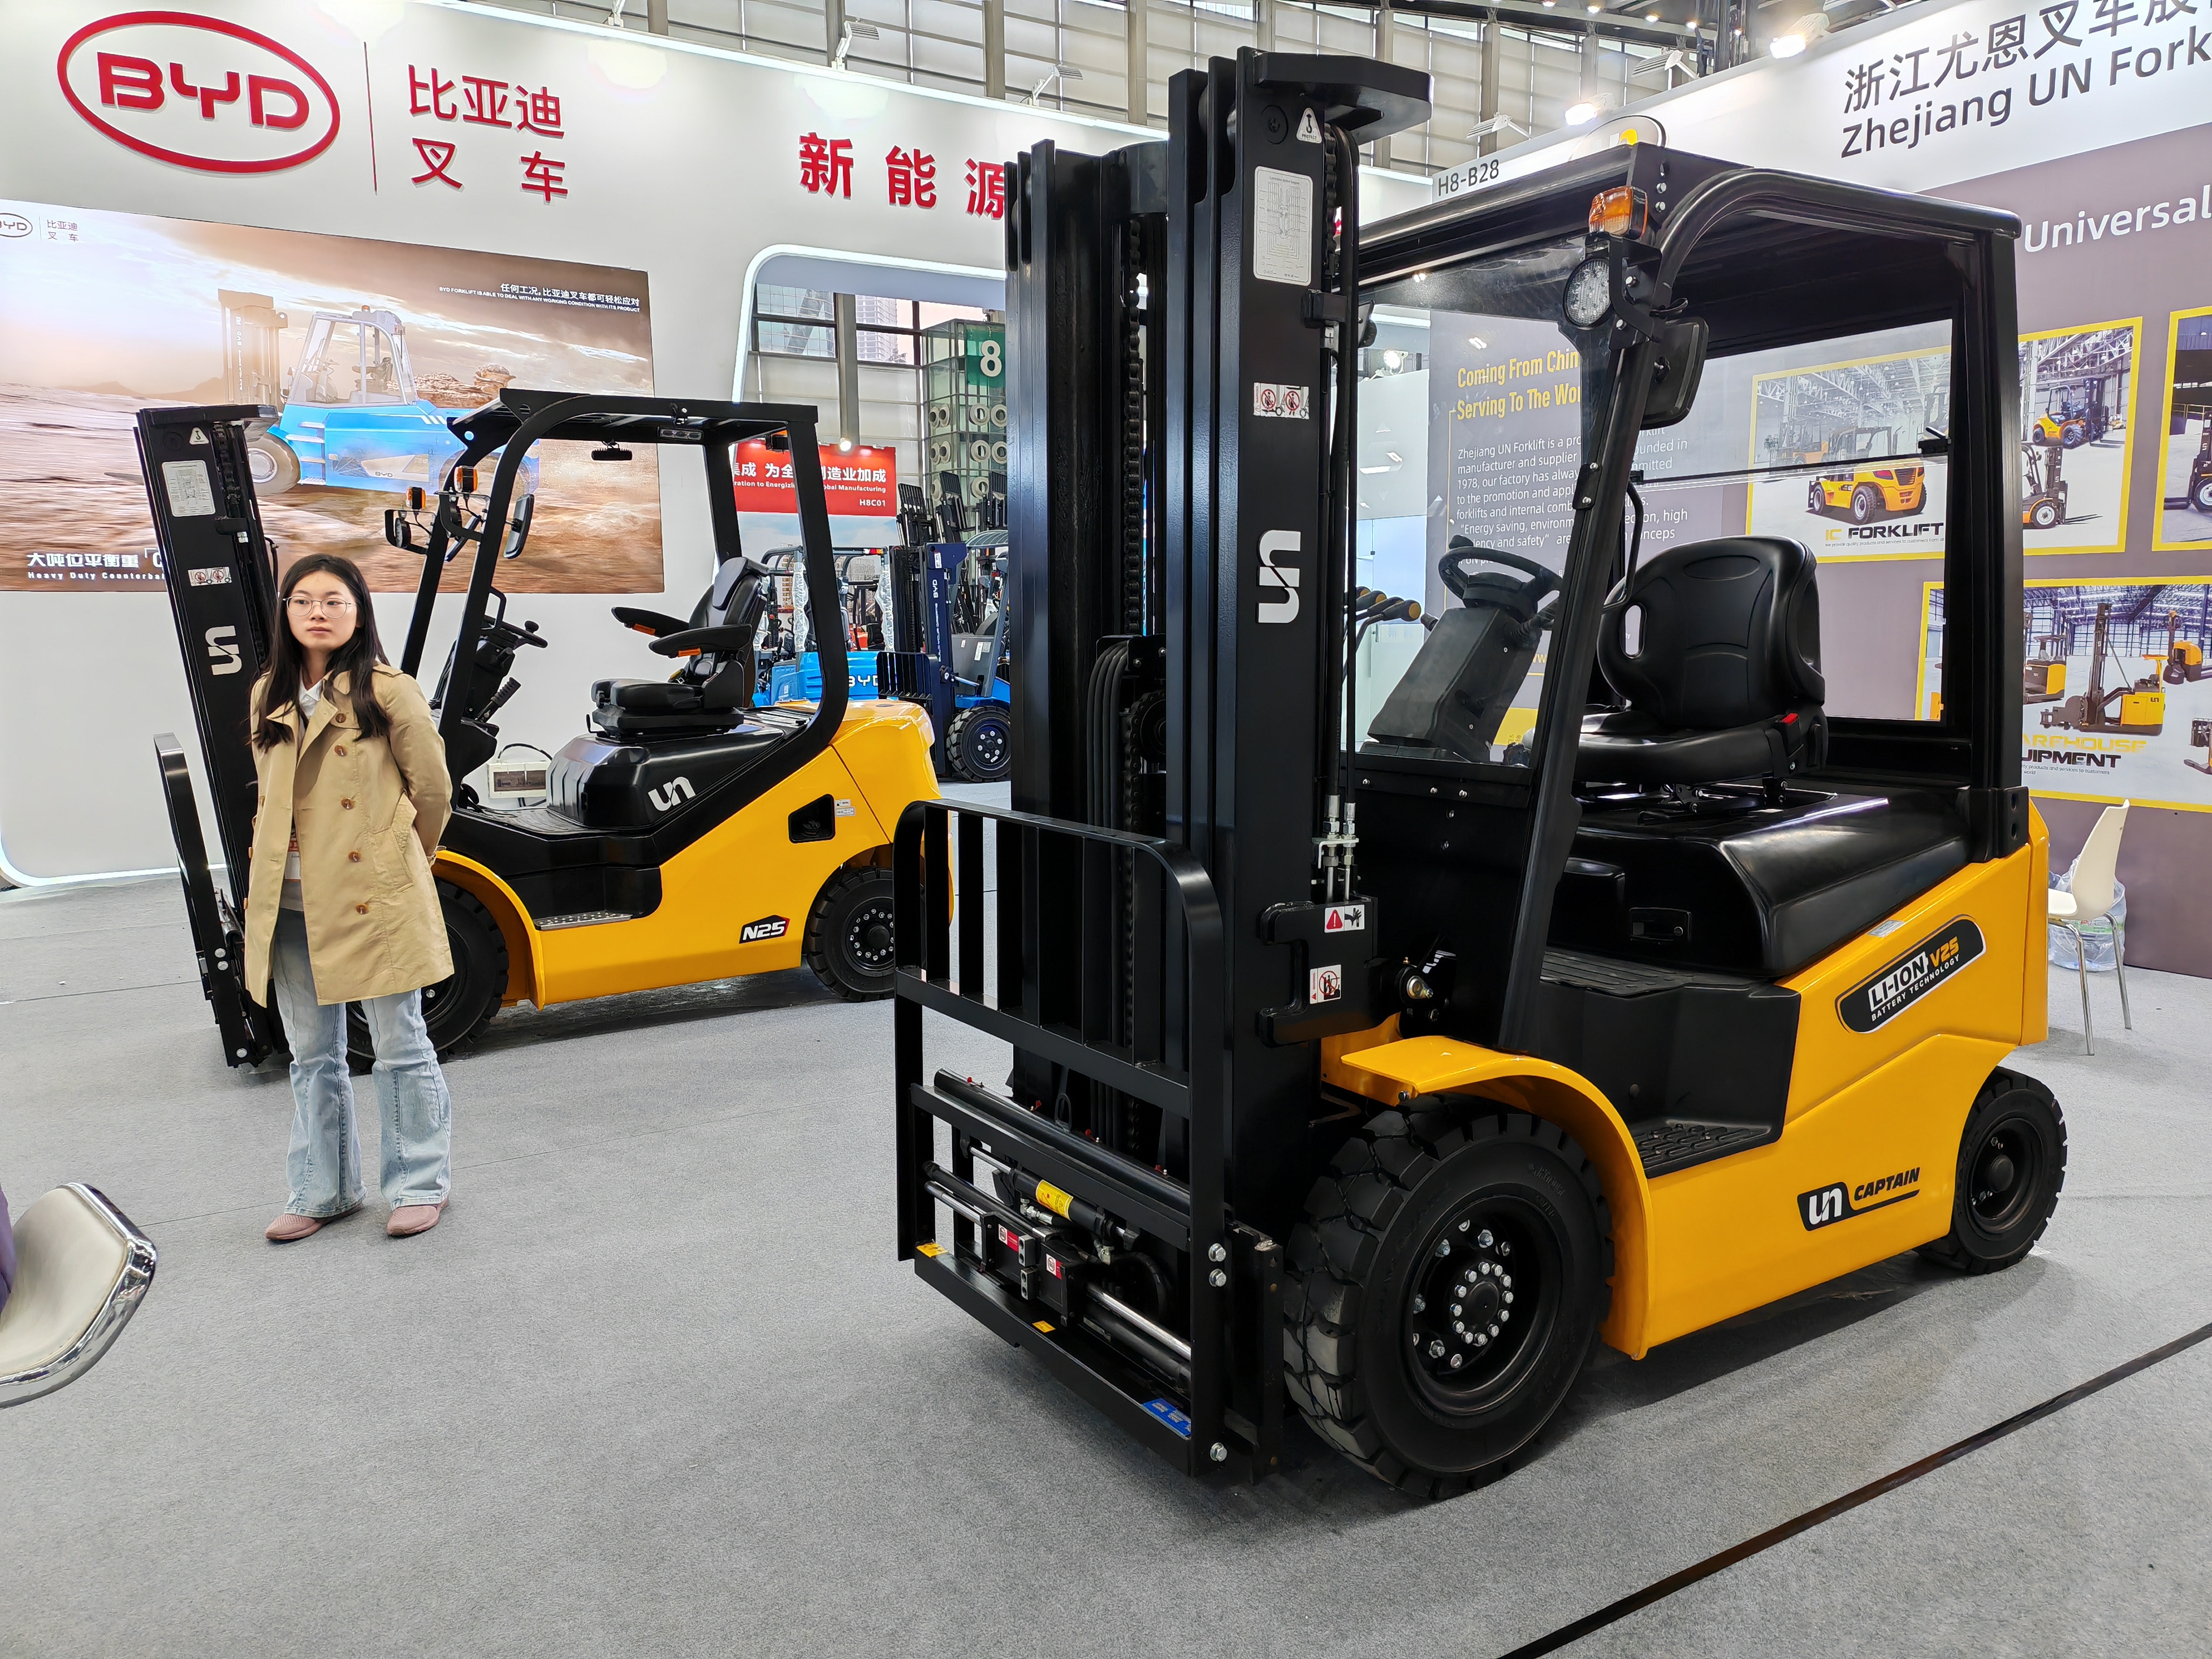 電動フォークリフト、倉庫内作業向けロボットアームなどが集結。深圳国際物流展「LogiMAT China 2024」